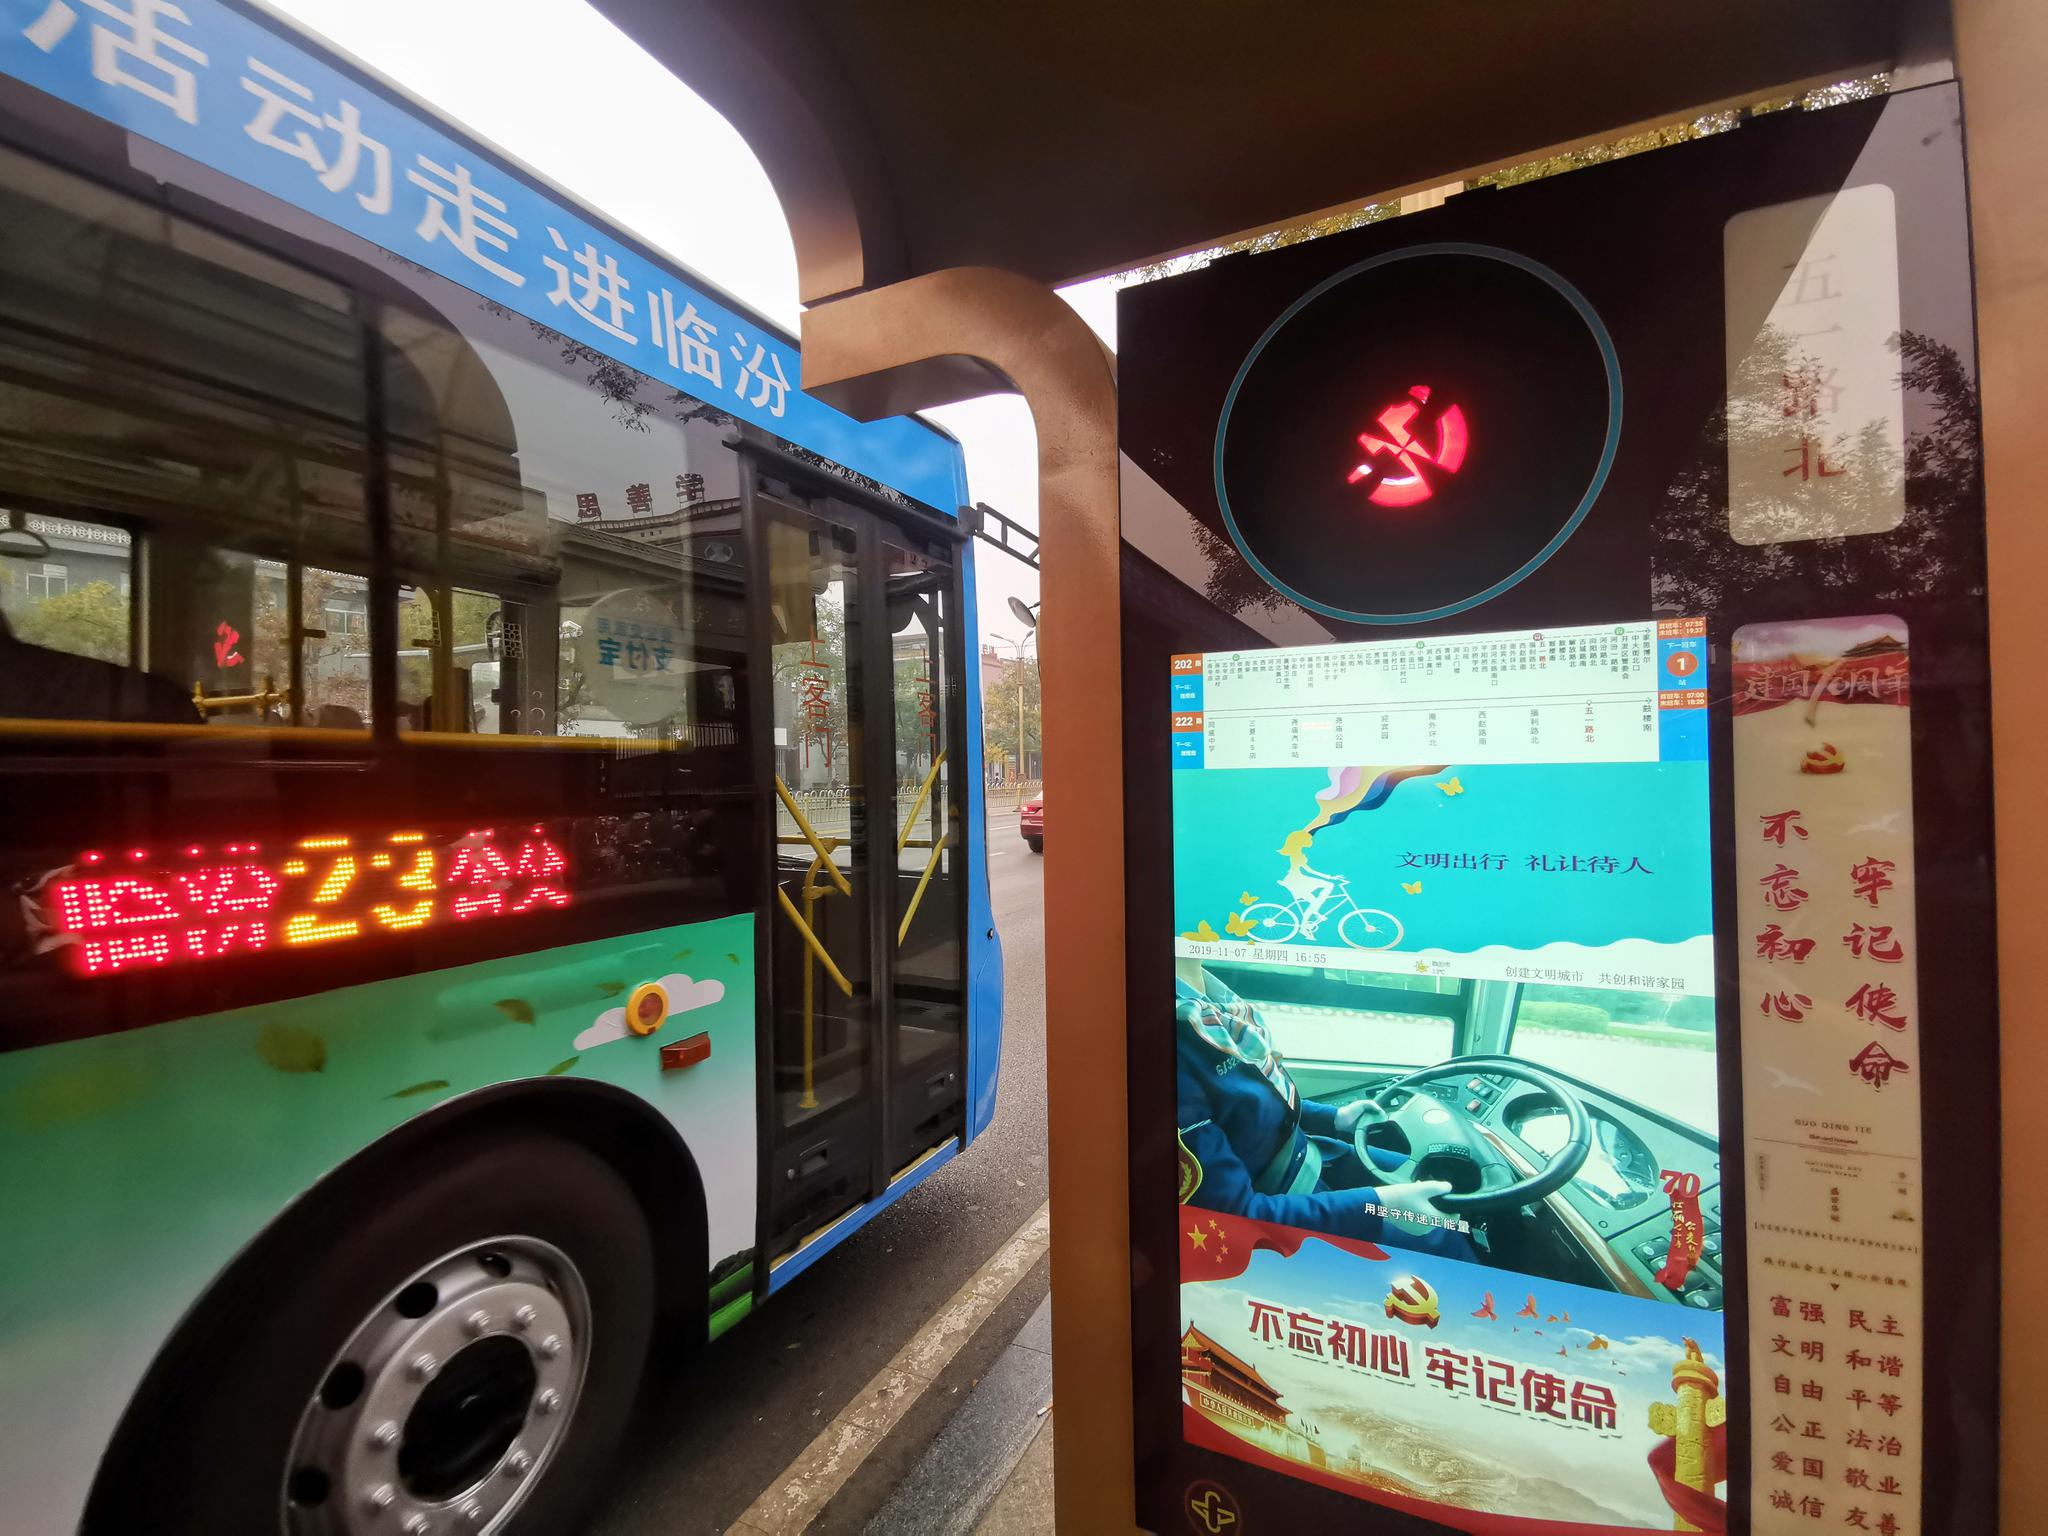 为让更多市民选择公交出行，临汾市区每一个公交站台都安装了“电子站牌”，可实时预报公交车到站信息。摄影/新京报记者 裴剑飞